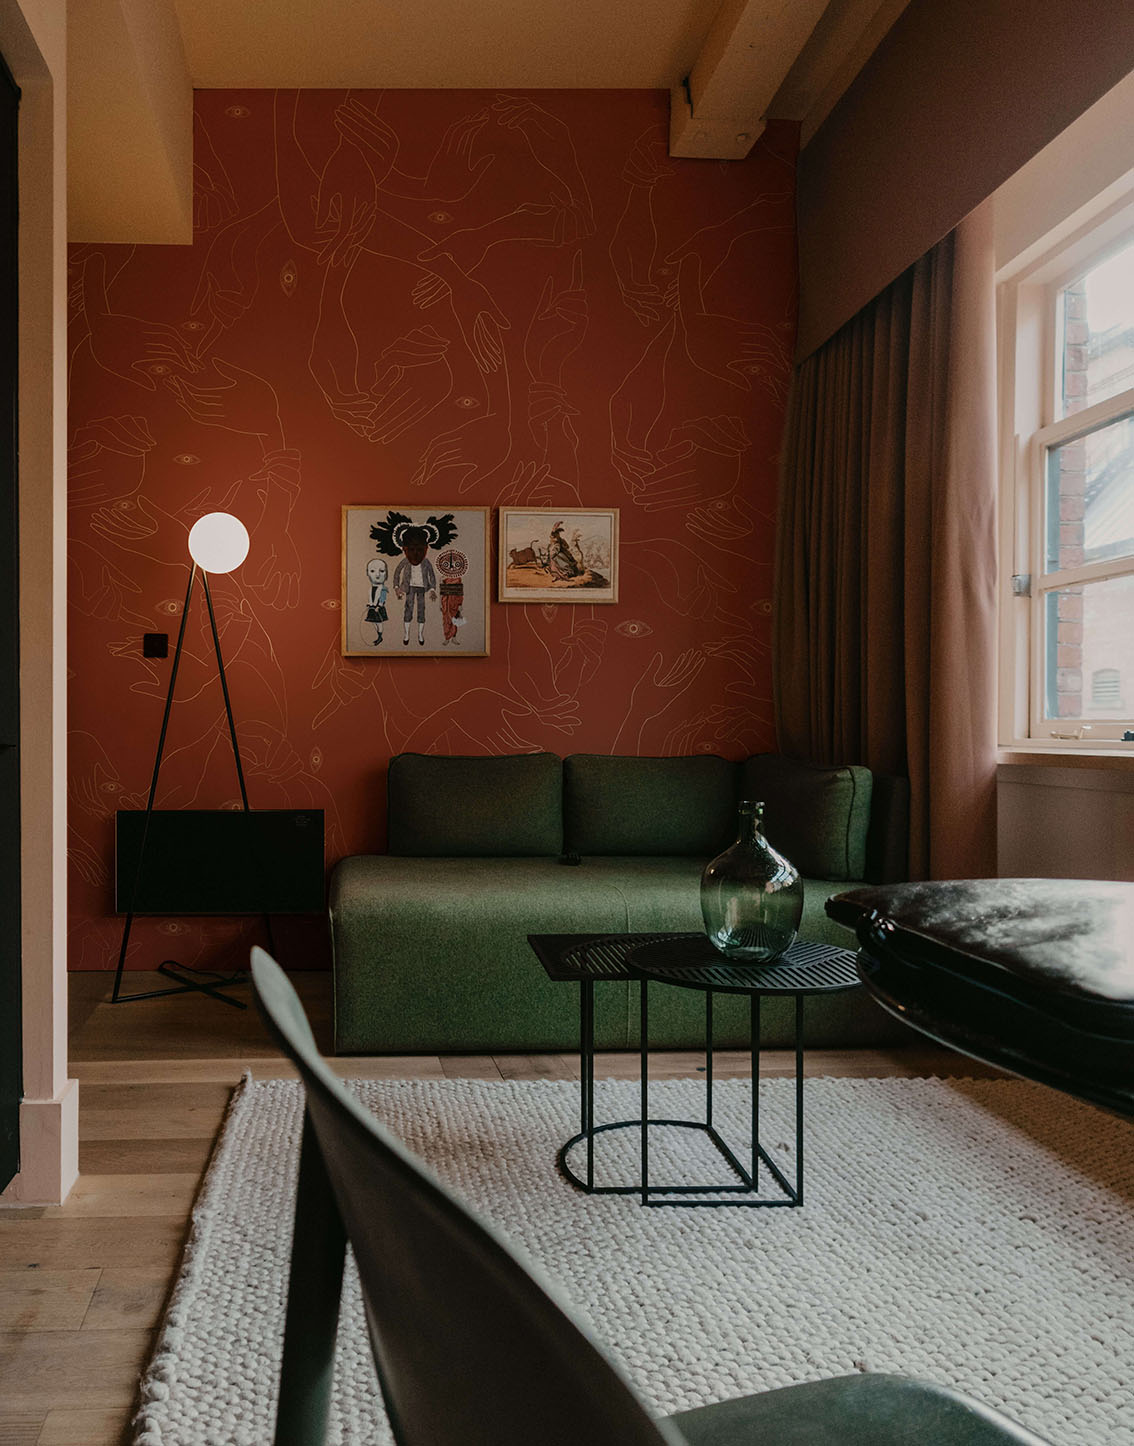 Wallpaper-Uno-Nessuno-Cannella-MaVoix-wallpaper-London-house-living-room